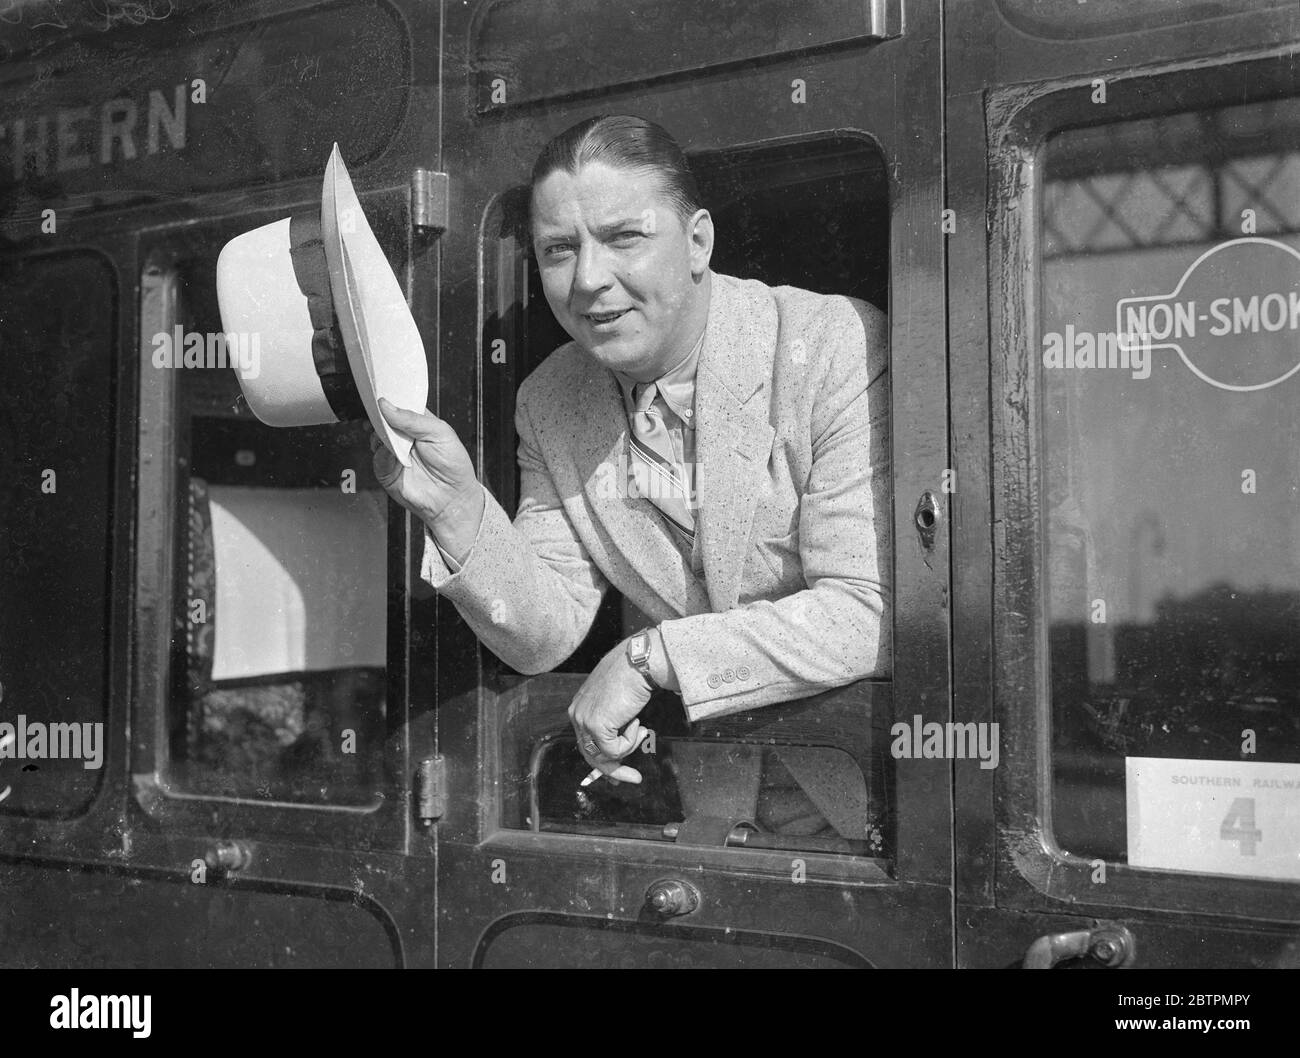 Spettacoli fotografici : Charles Penman [ radio canadese , cbc , attore vocale ? ] 1936 didascalia originale da negativo Foto Stock